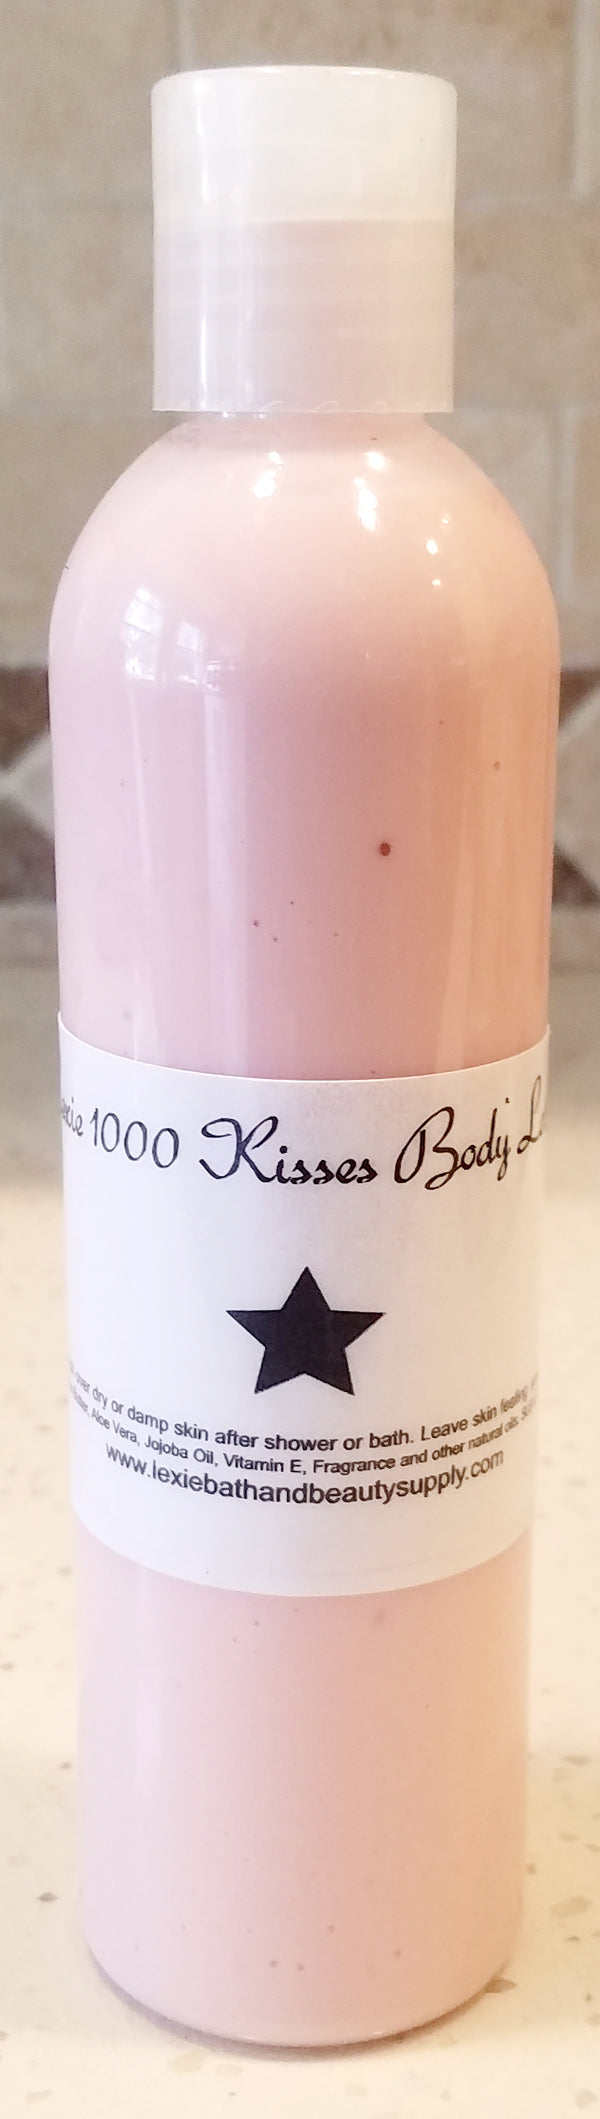 Lexie 1000 Kisses Body Lotion - Lexie Bath and Beauty Supply